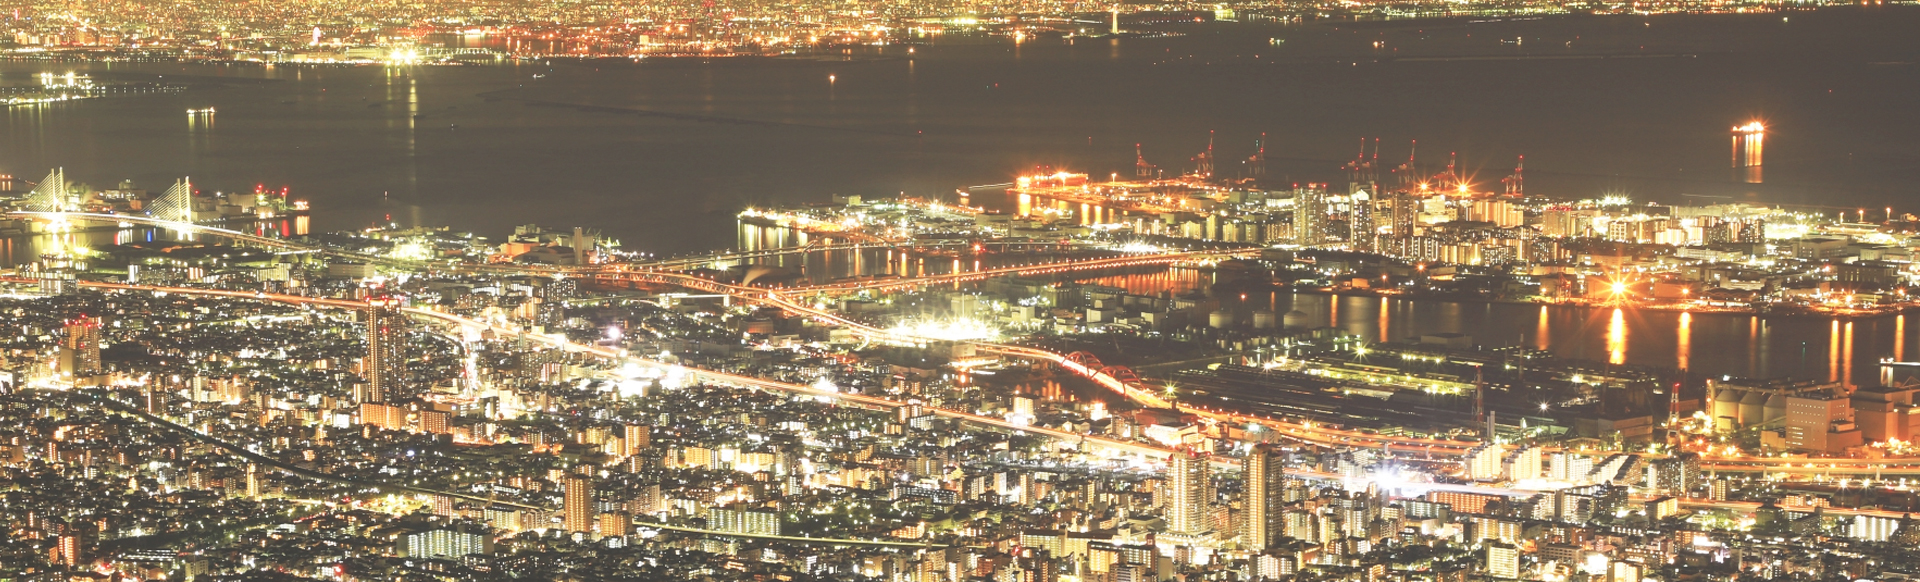 スライドショー神戸の港の夜景